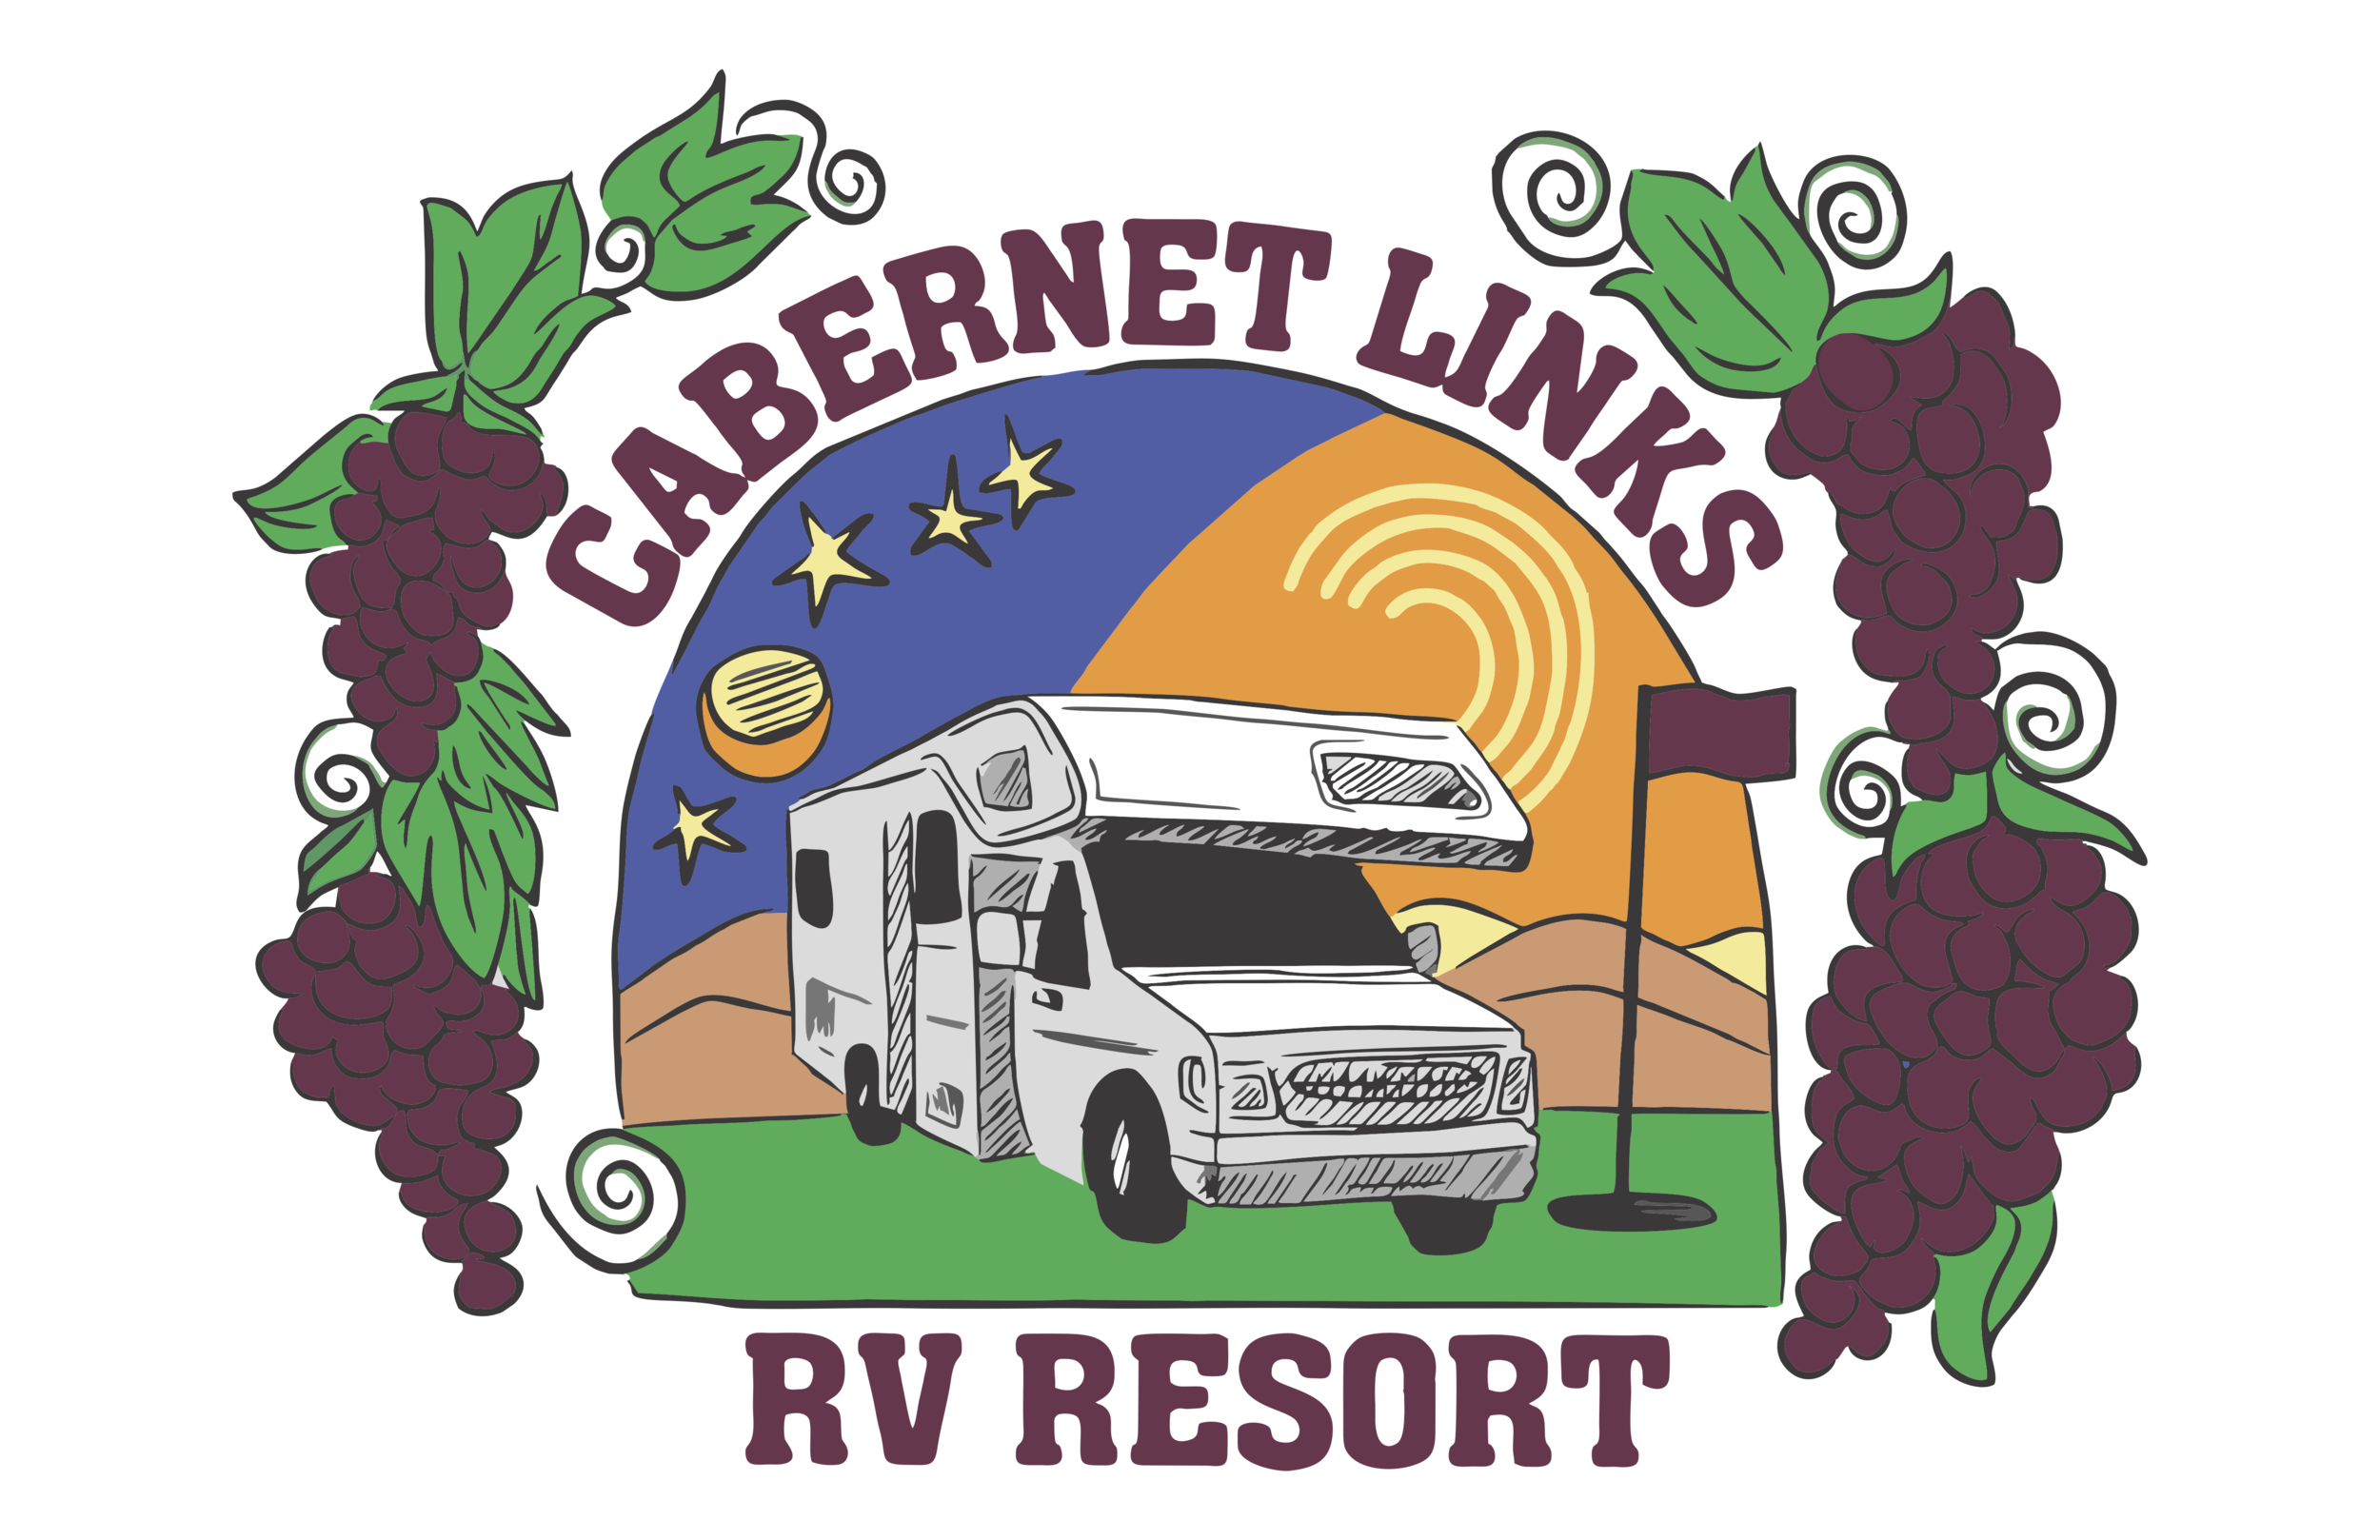 Cabernet Links RV Resort LOGO vector 921.png